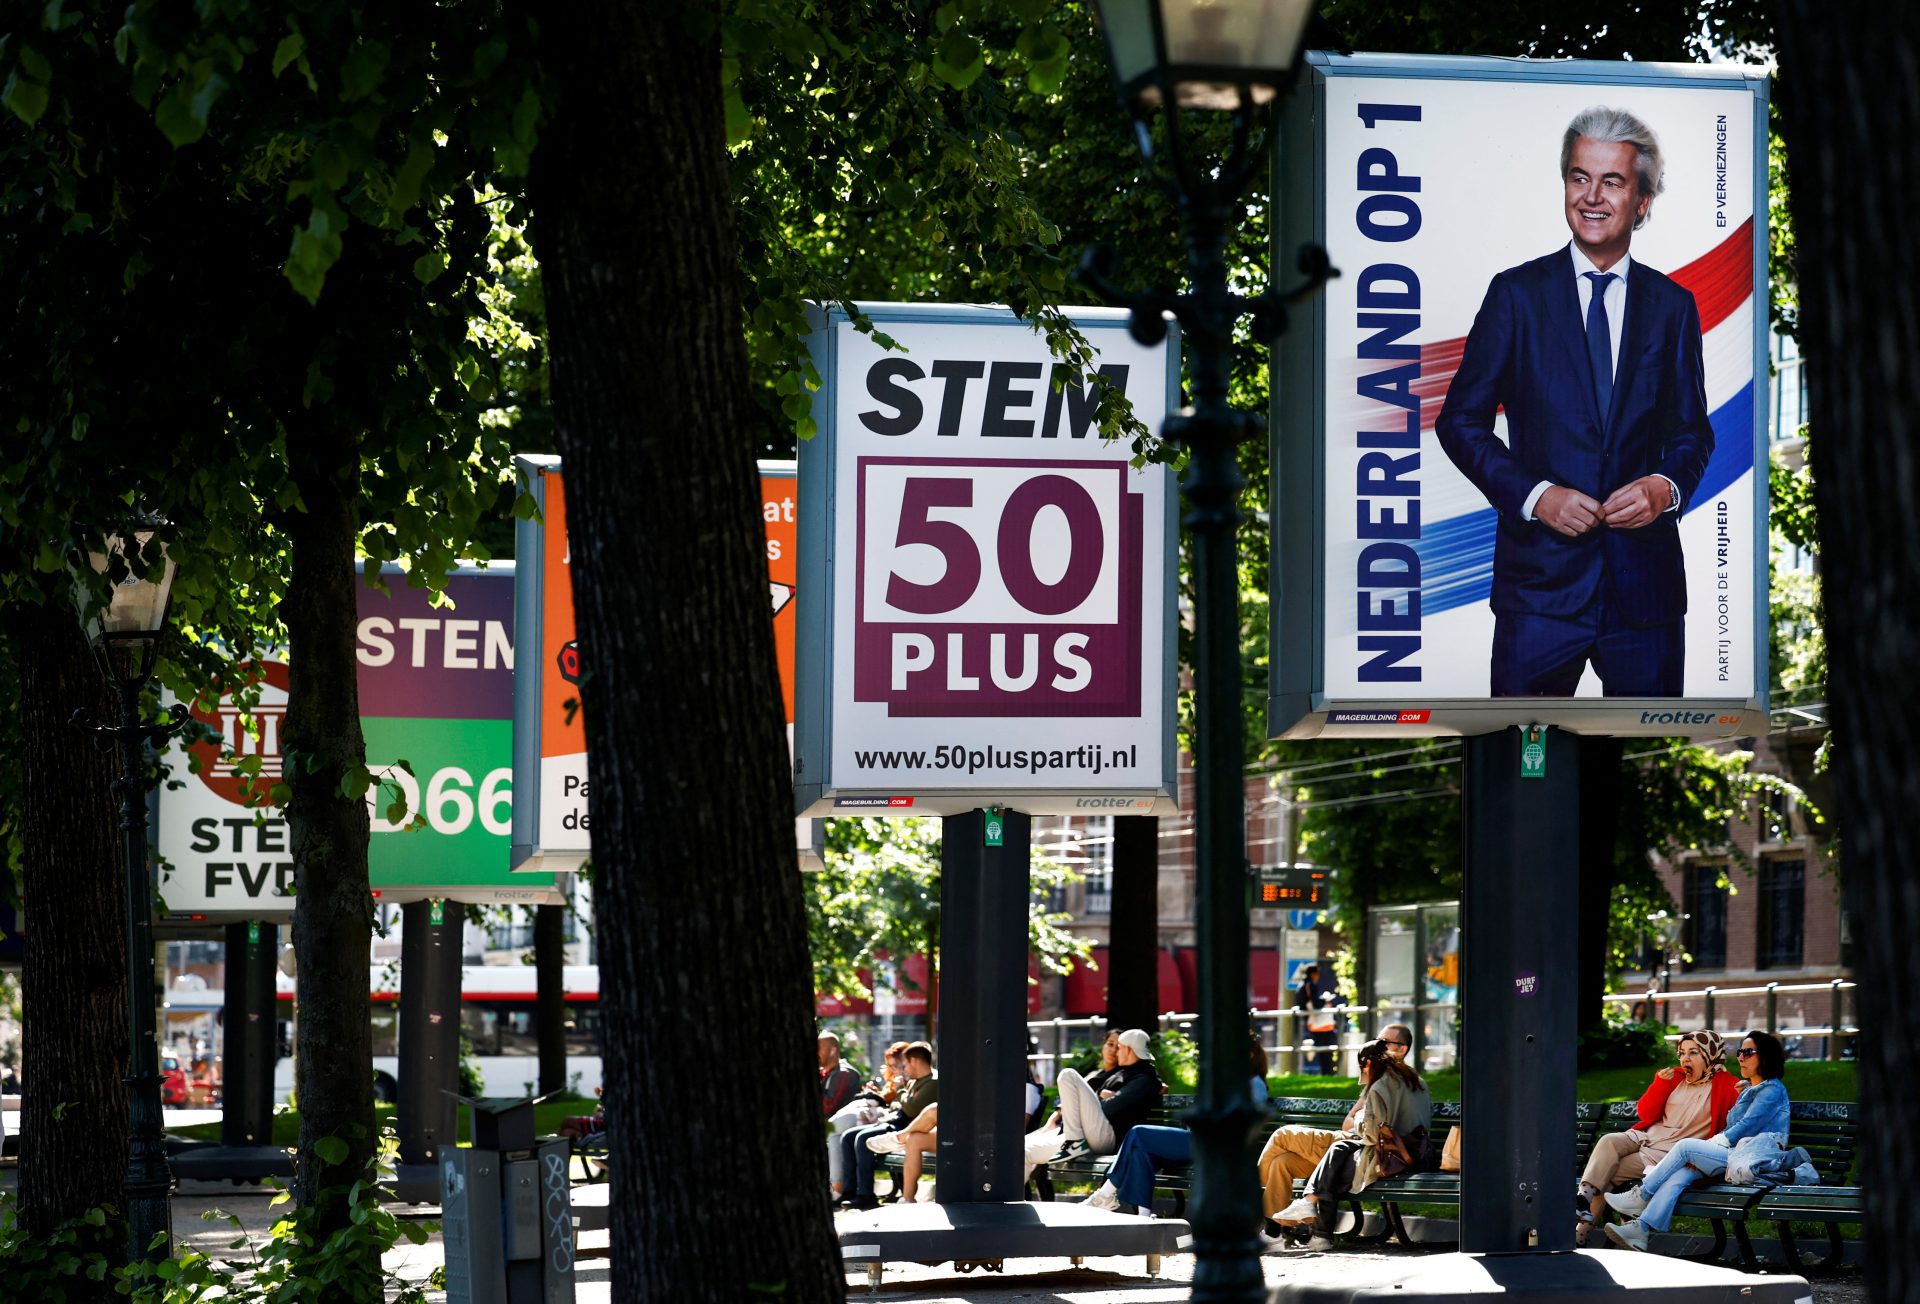 Les partis de gauche en tête tandis que l'extrême droite monte aux élections EU des Pays-Bas